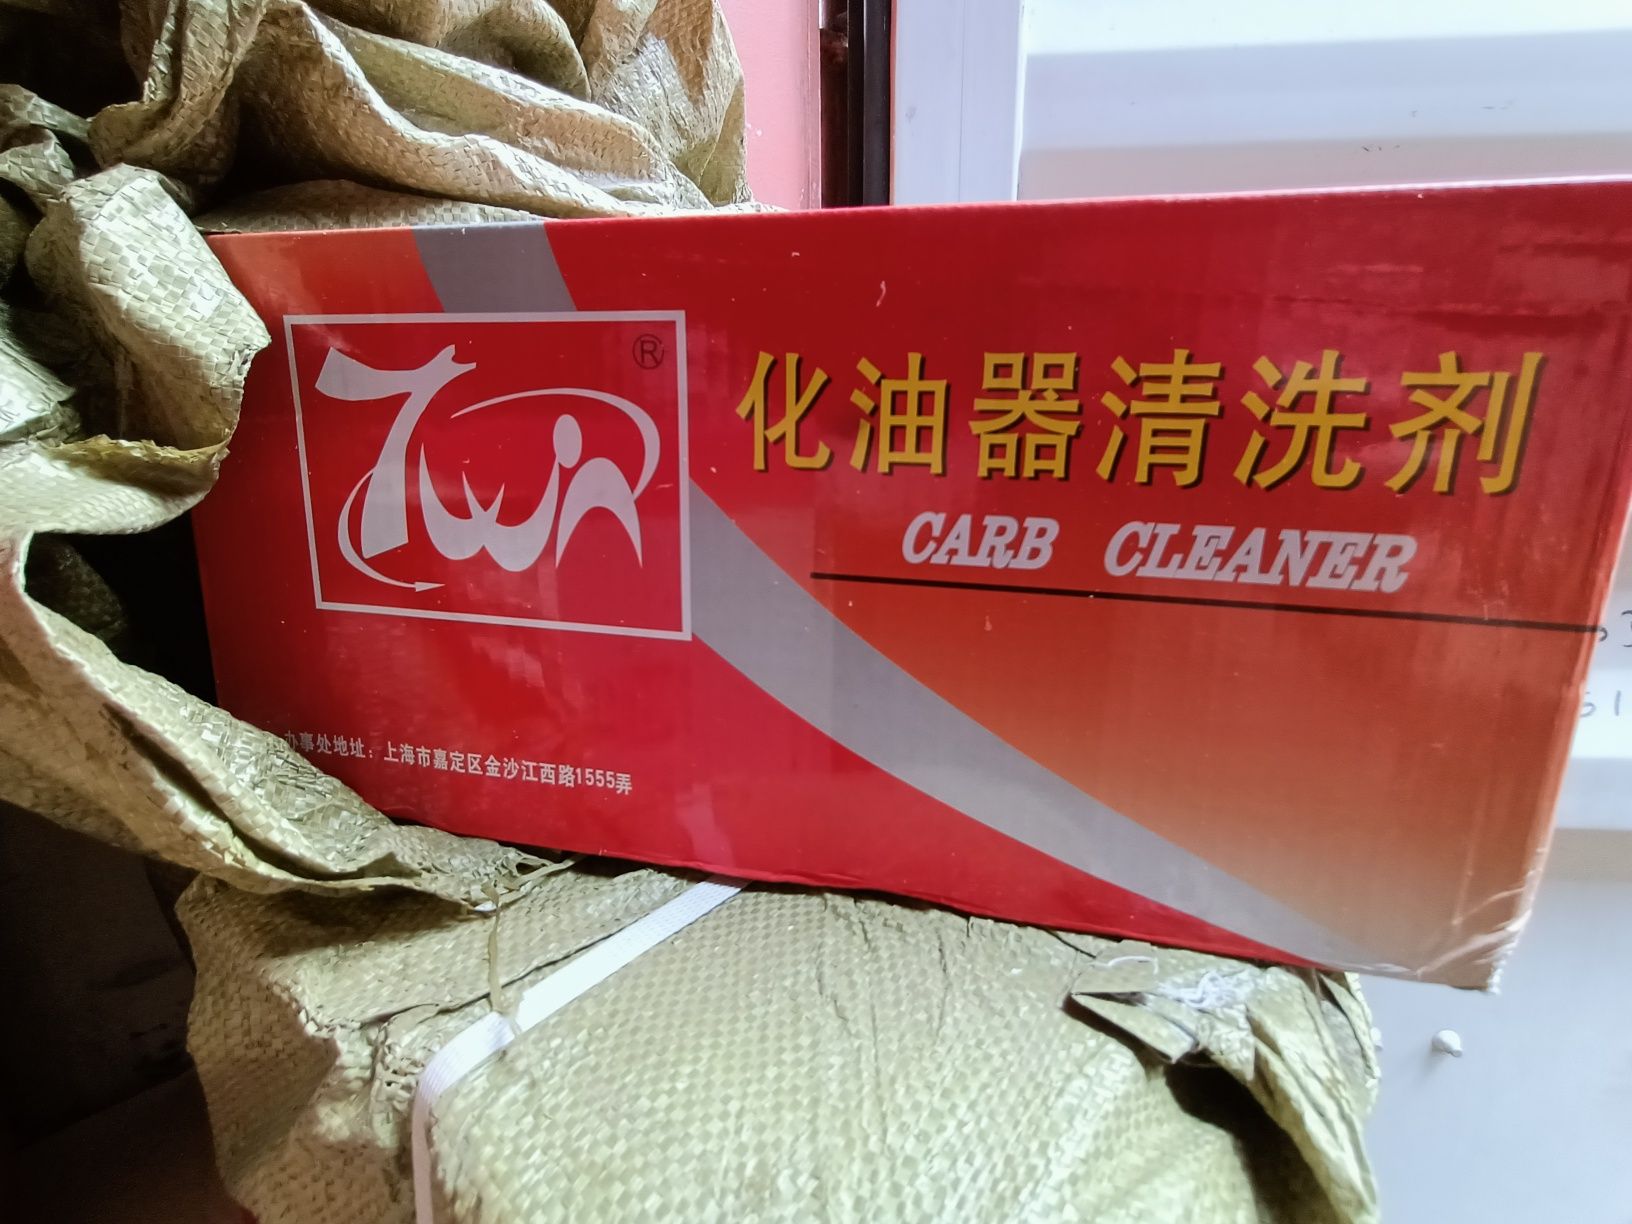 Карб 7win, очиститель карбюратора, carb cleaner